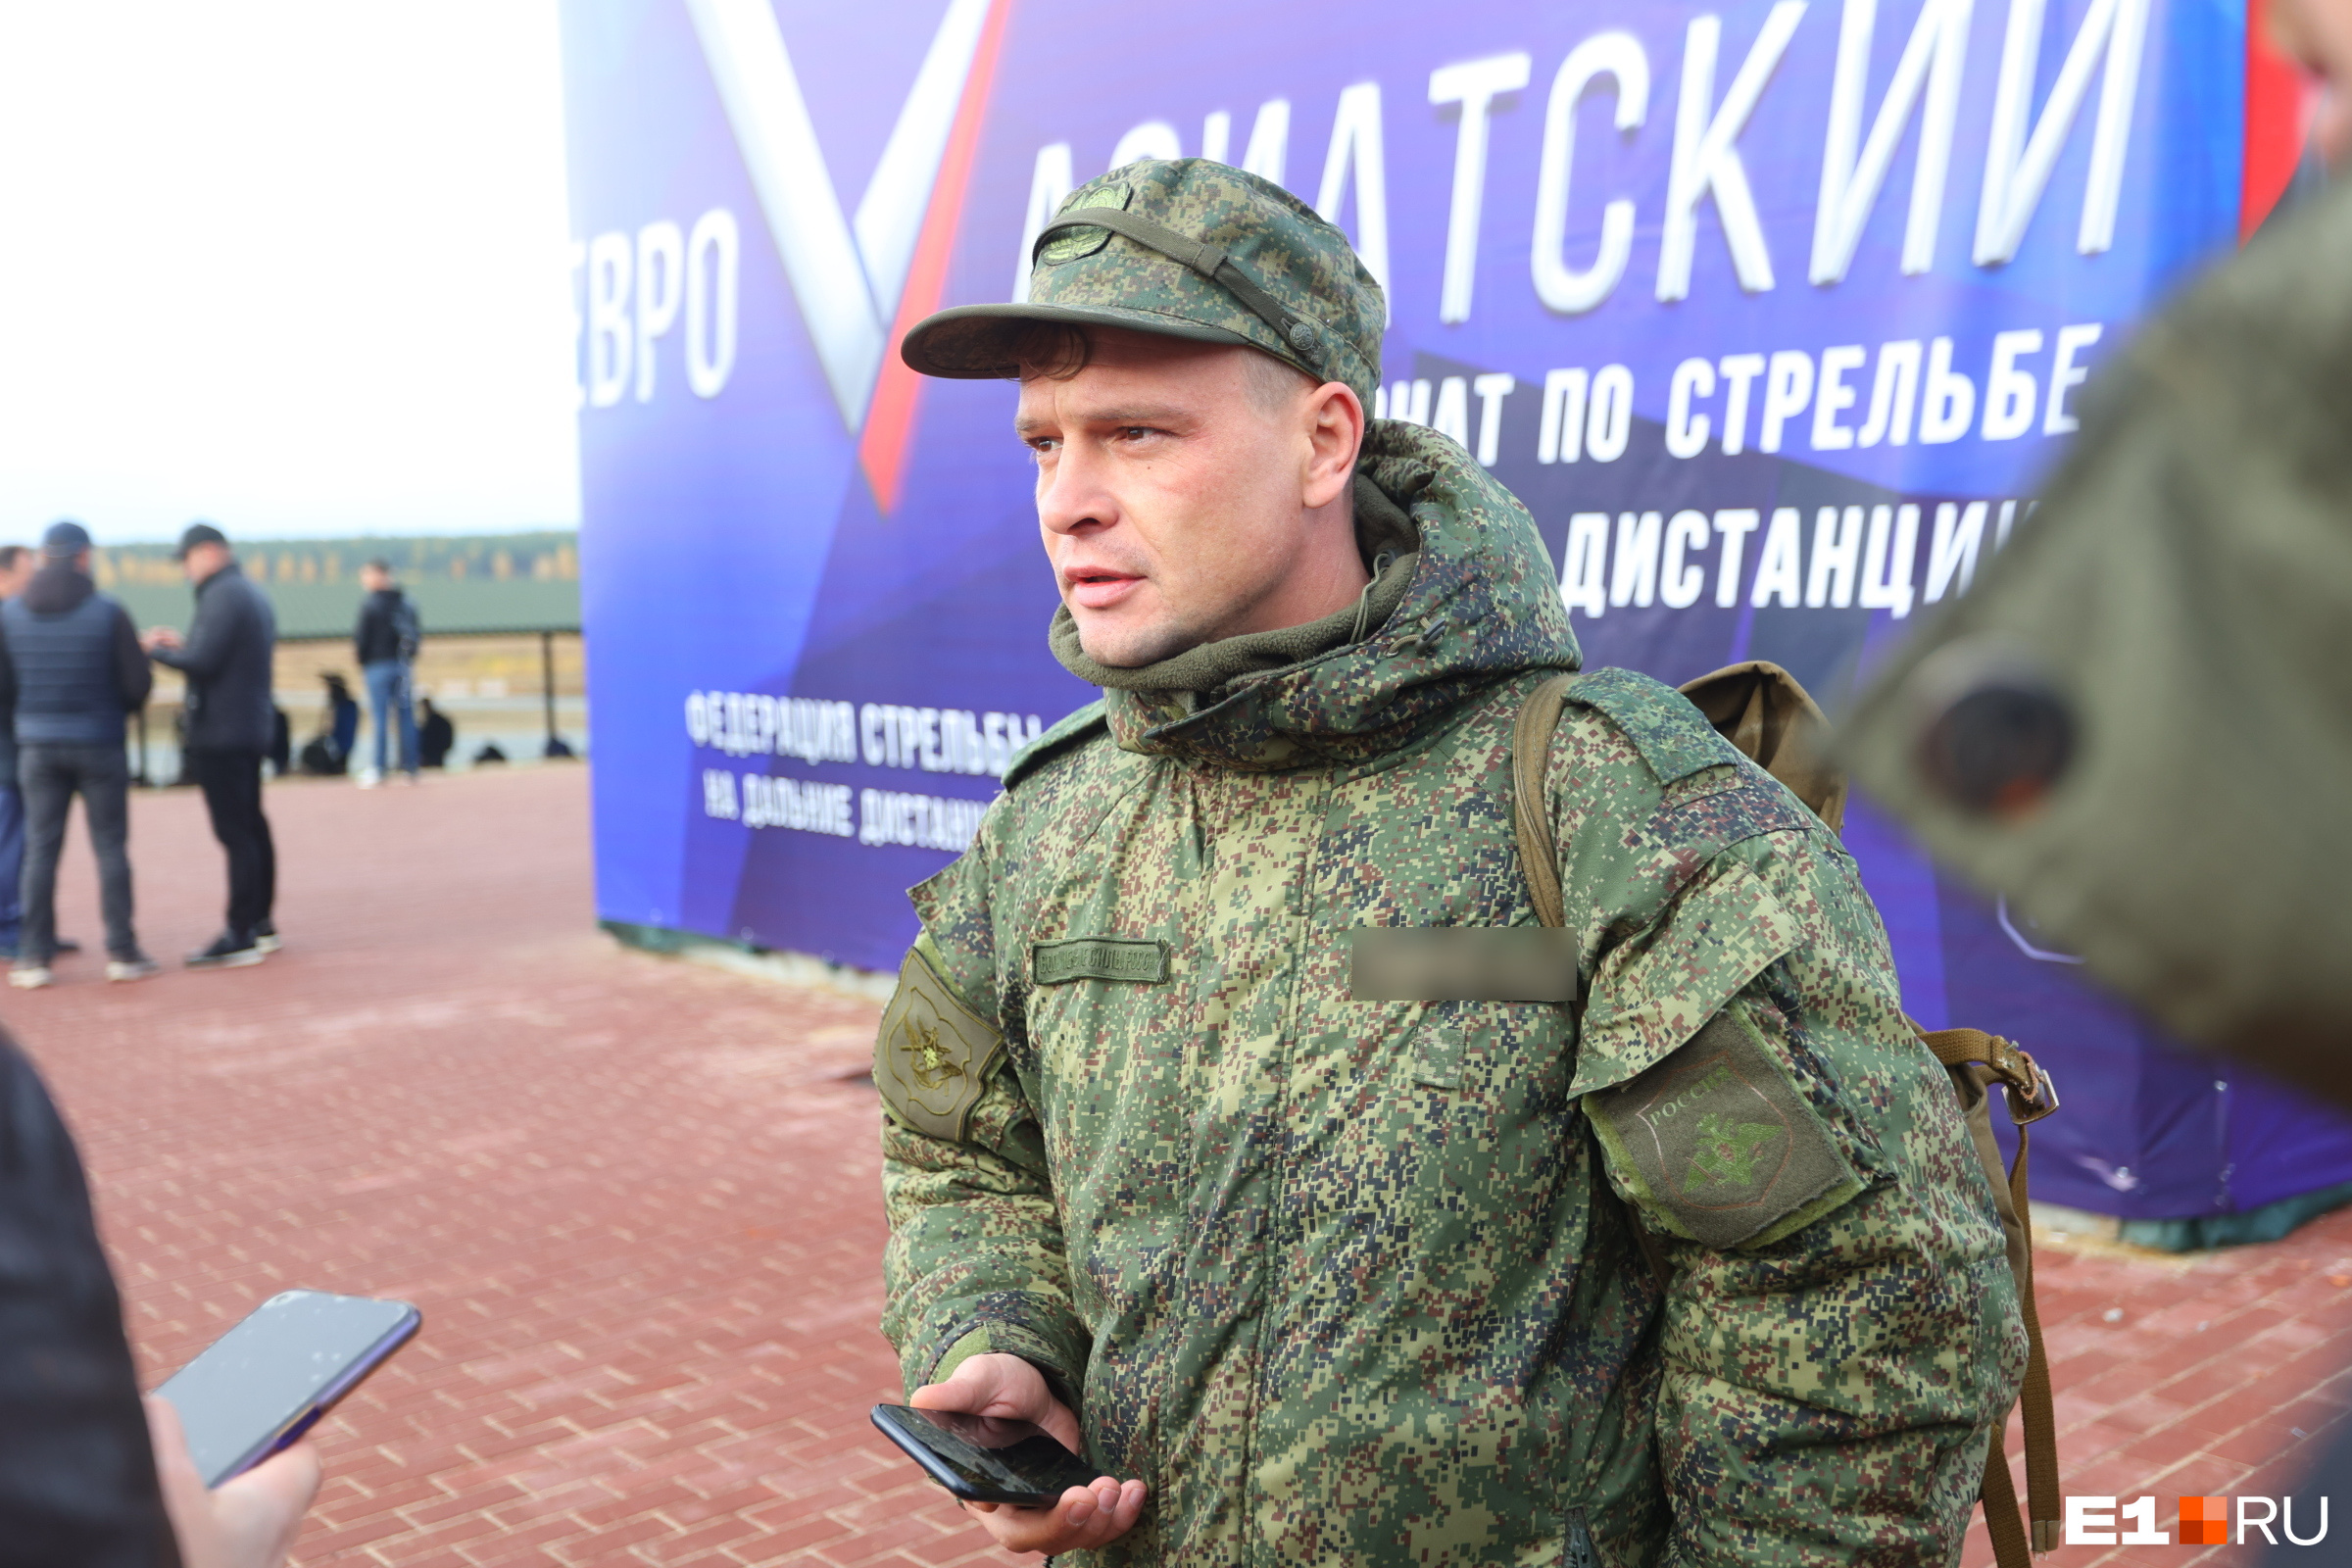 Кадровый офицер Сергей удивился, когда увидел, что на полигоне проходит турнир снайперов